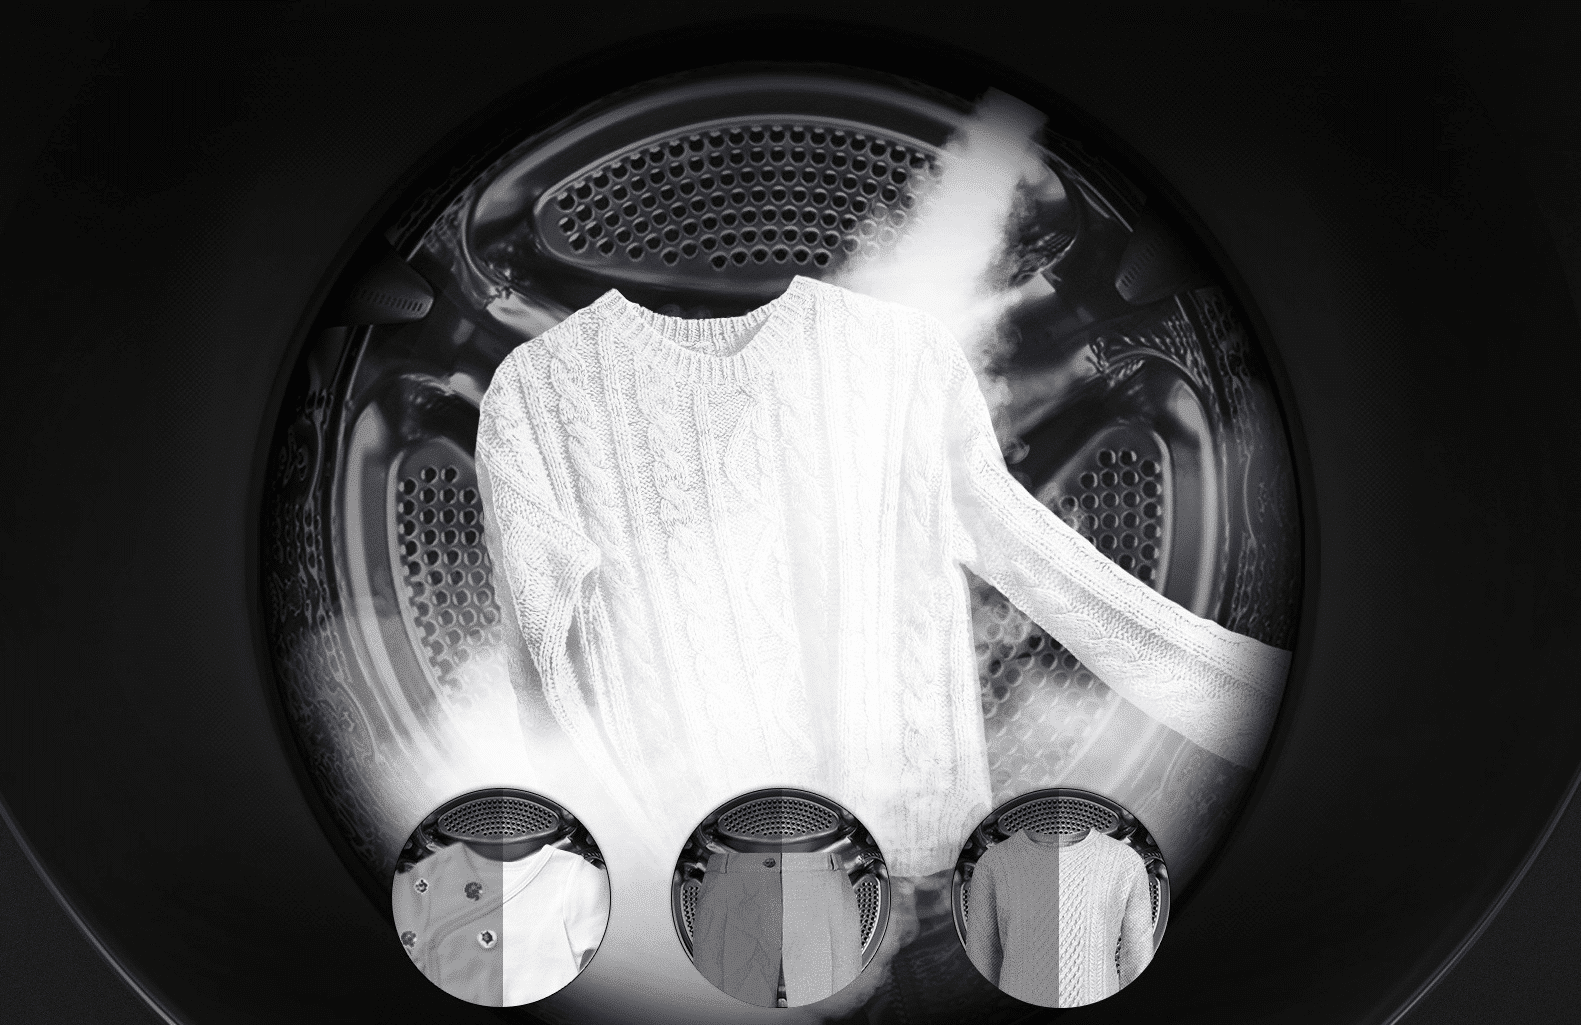 функция пара в стиральной машине steam что это такое фото 3